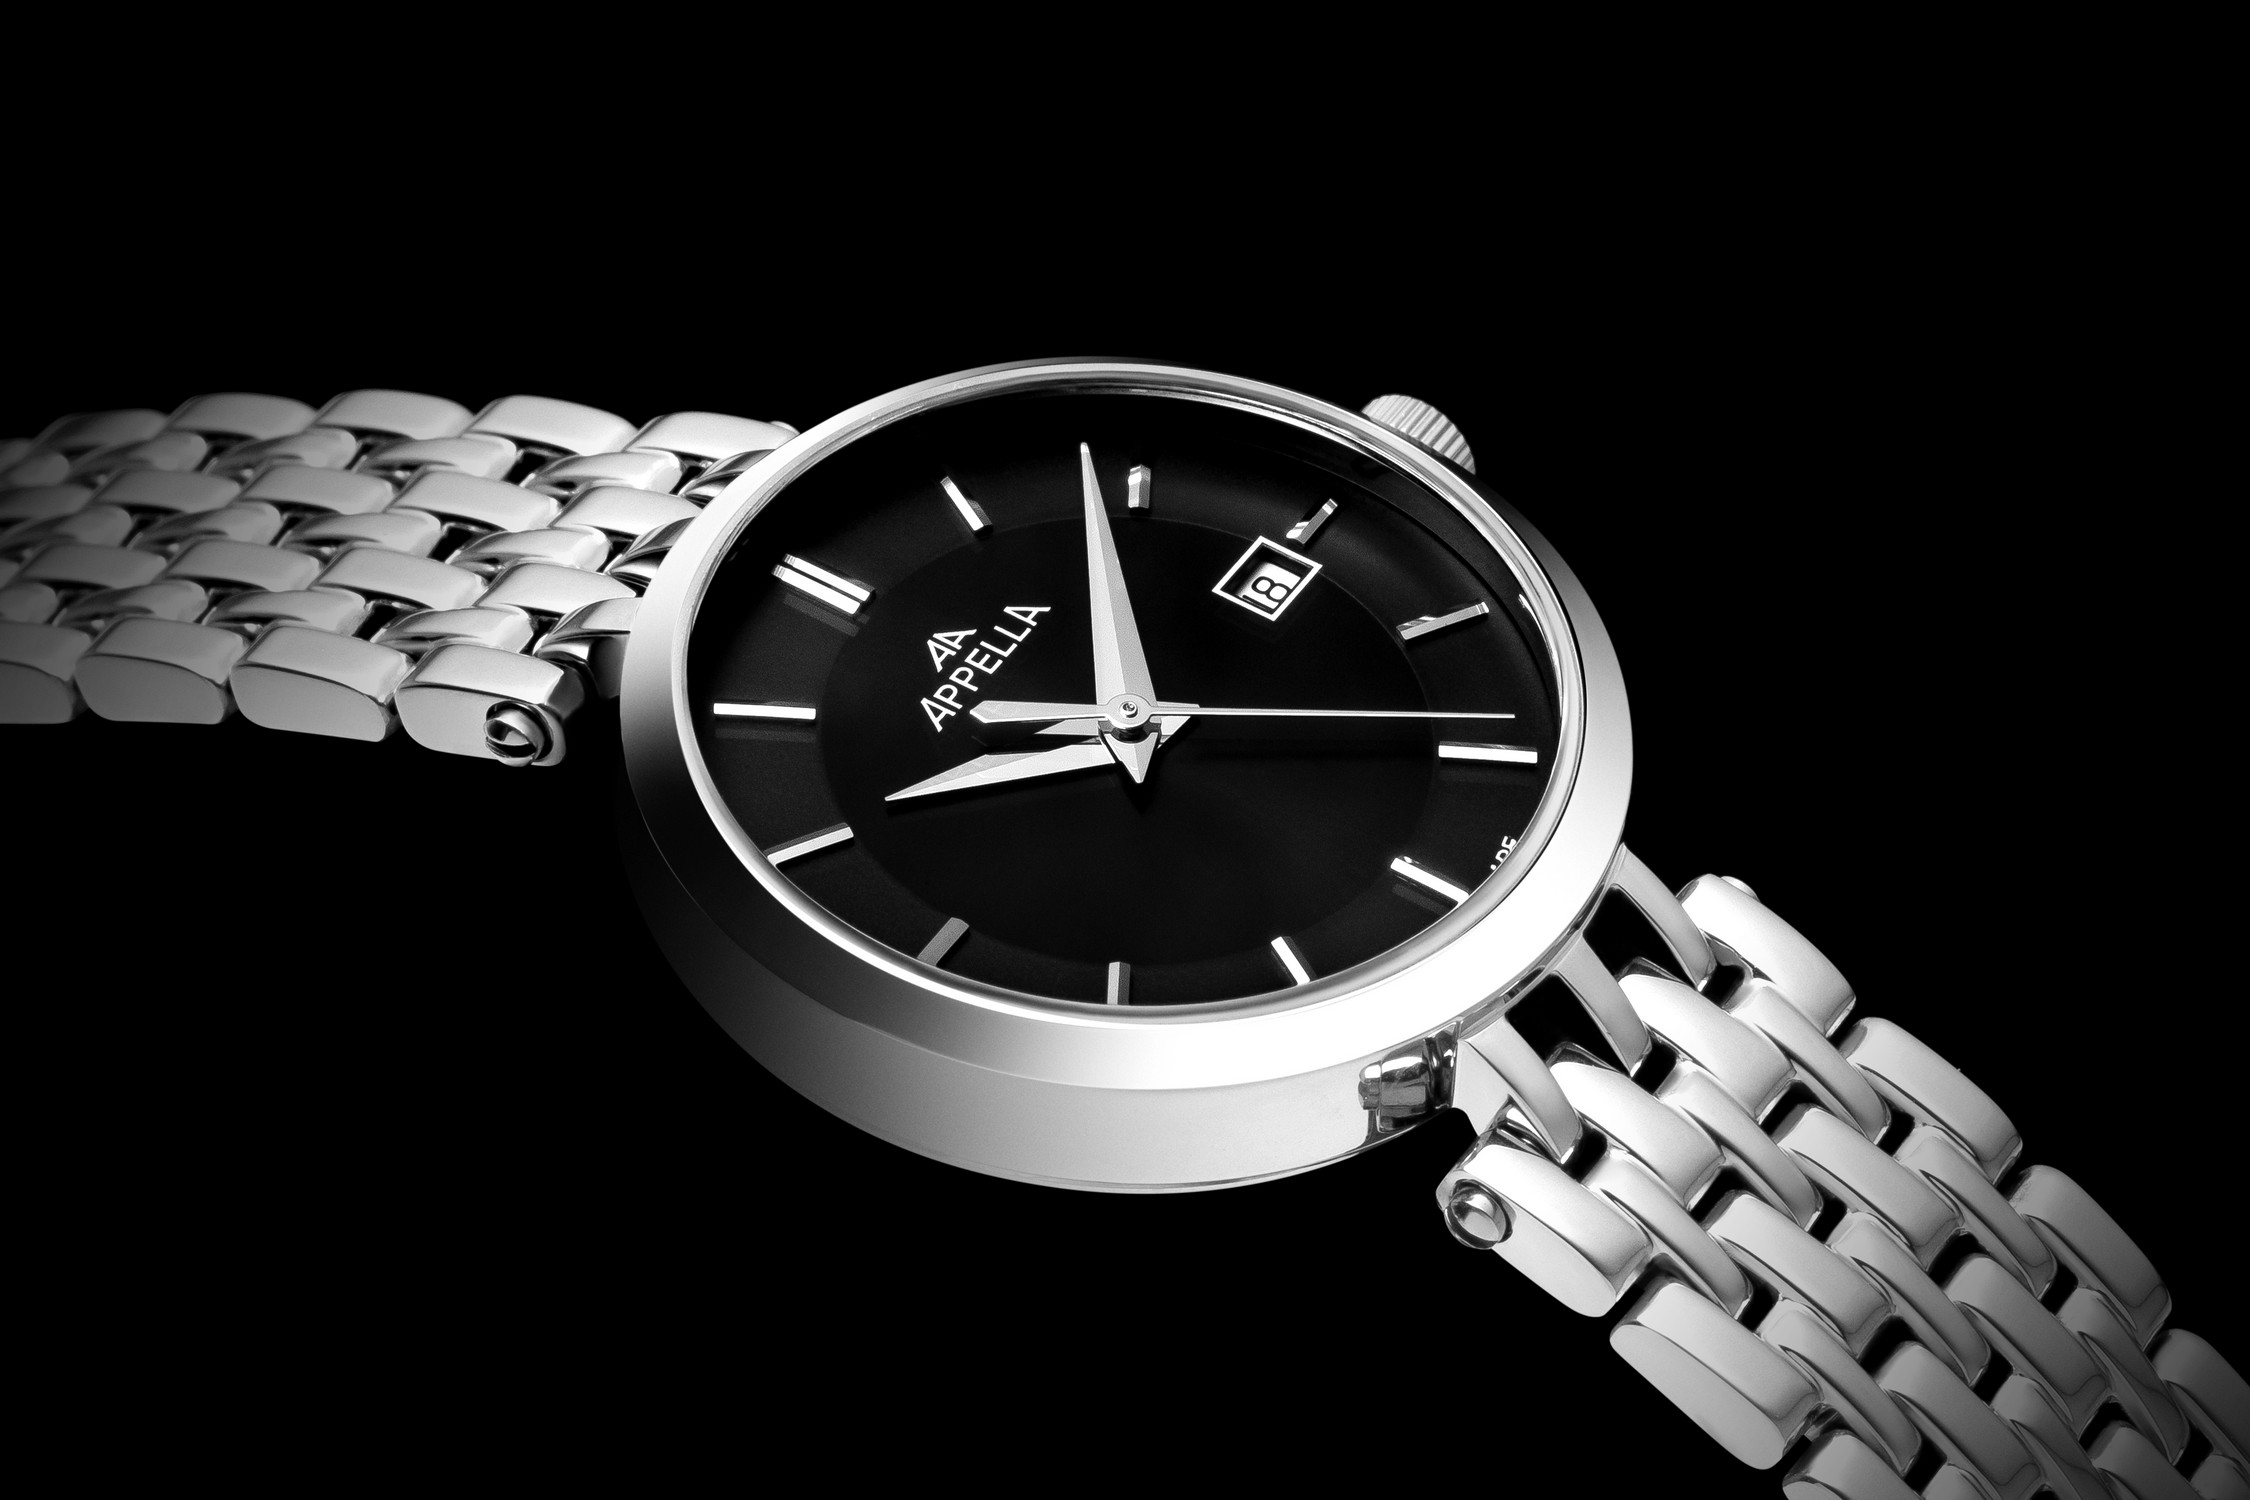 APPELLA  Женские швейцарские часы, кварцевый механизм, сталь, 29 мм